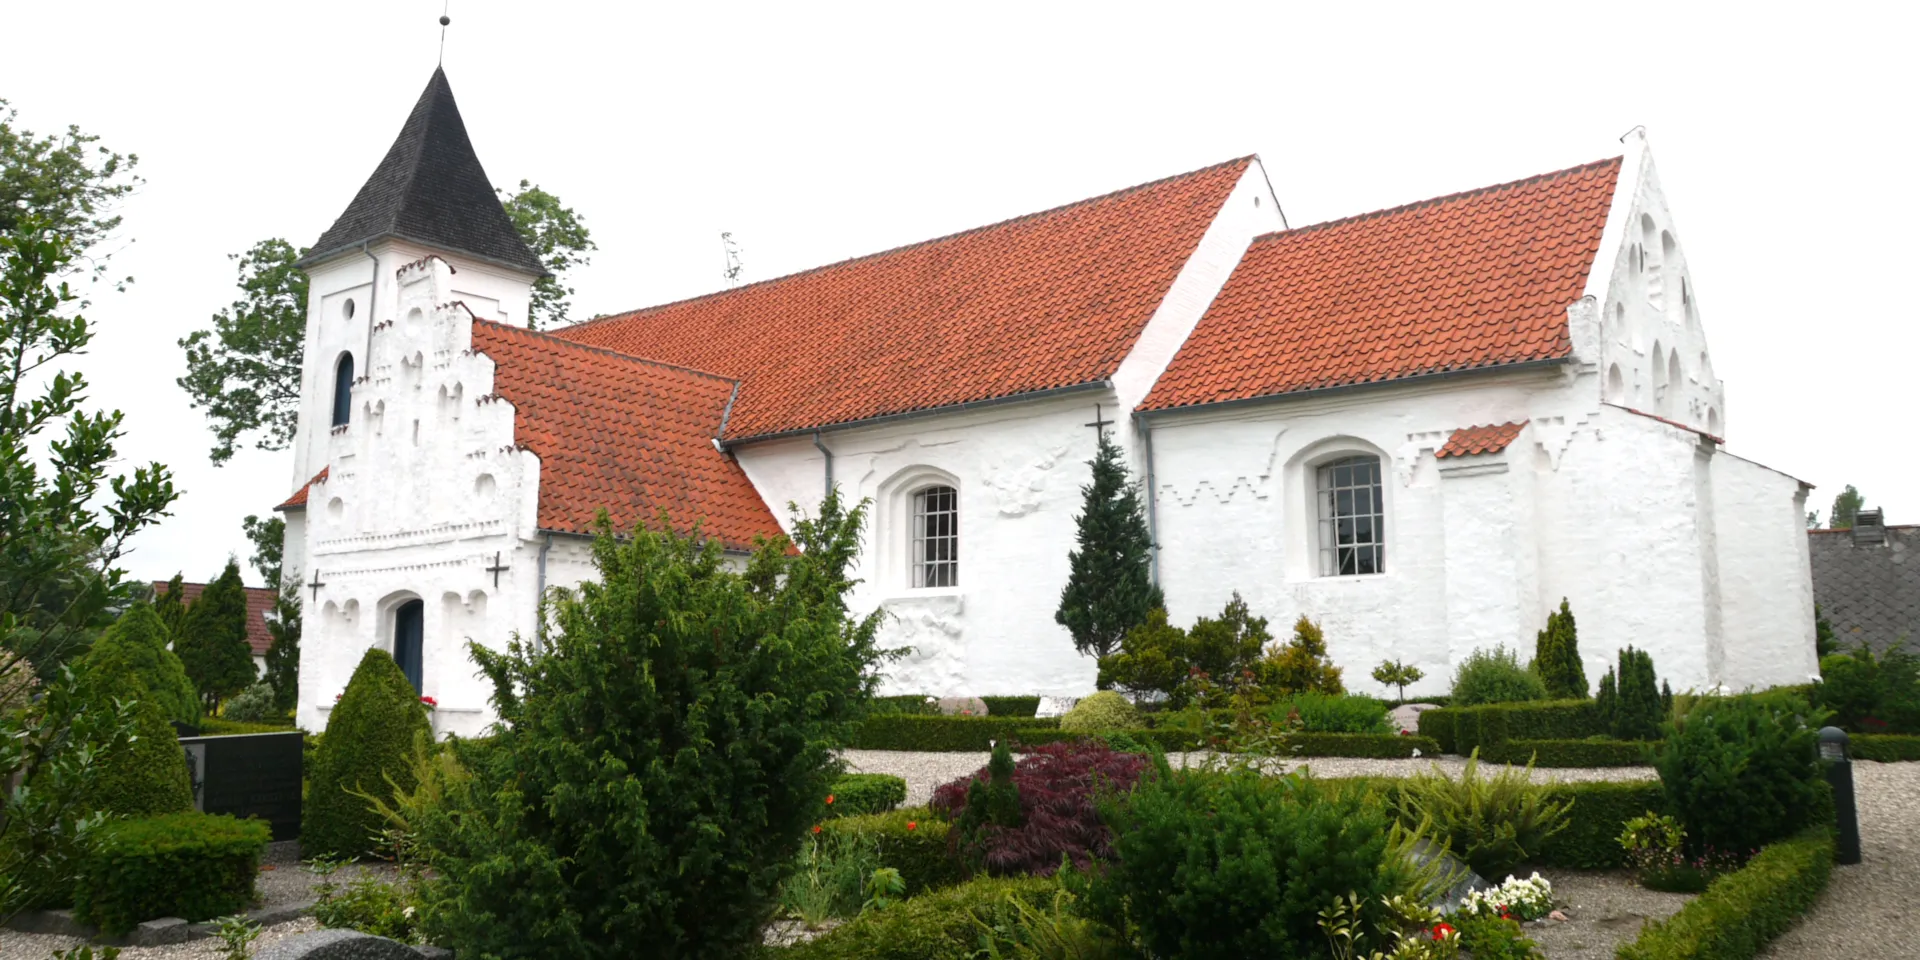 Attraktioner
Kirke
Landsbykirke
Roerslev
Middelfart
Lillebælt Waters
Visitmiddelfart